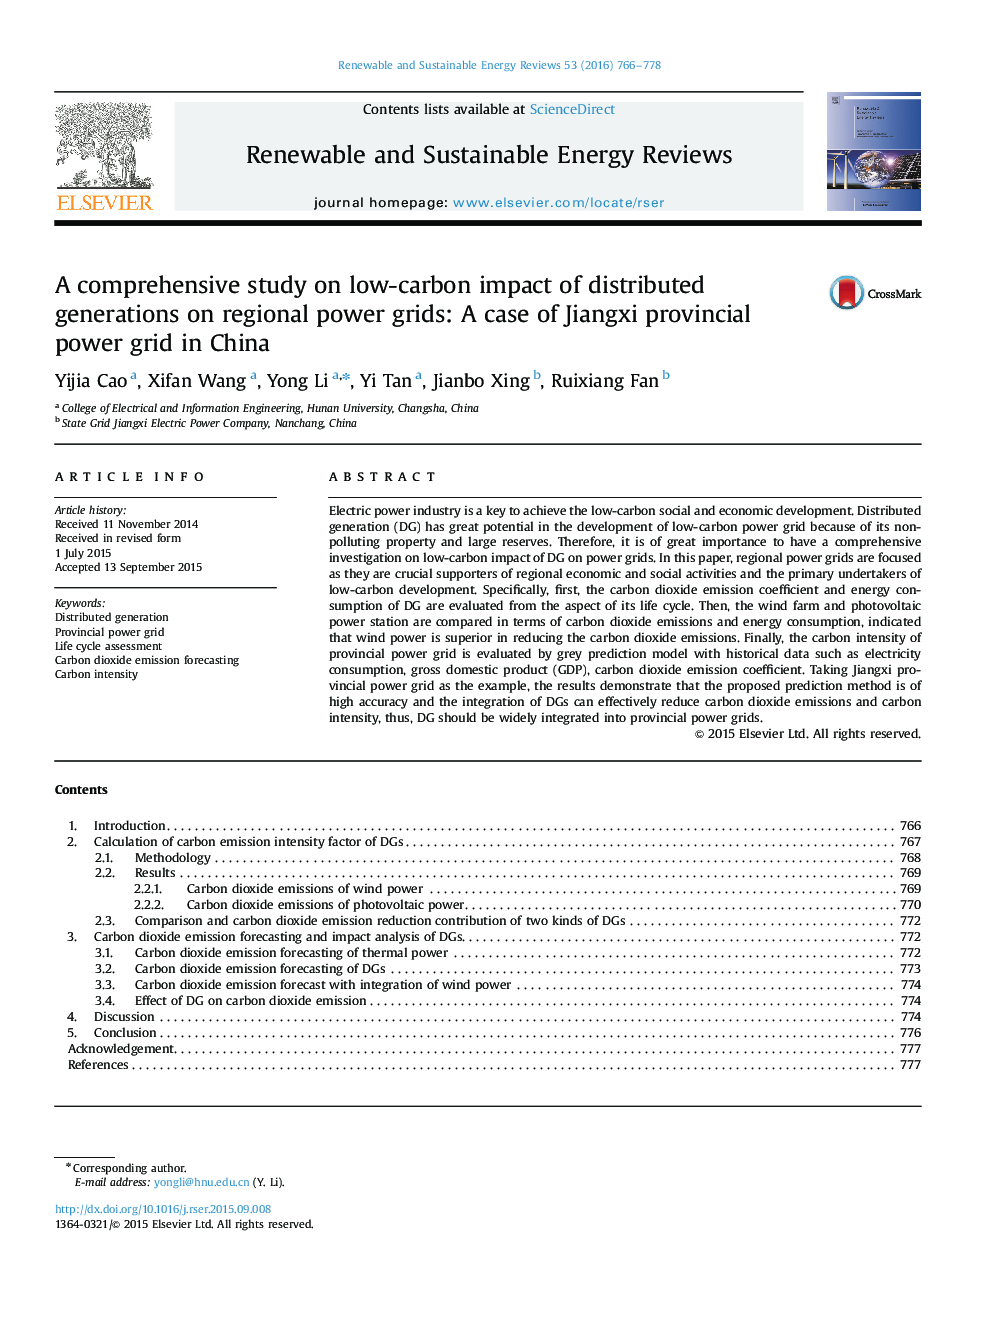 یک مطالعه جامع در مورد تاثیرات کم کربن بر نسل های توزیع شده در شبکه های برق منطقه ای: یک مورد شبکه برق ولزی جیانگشی در چین 